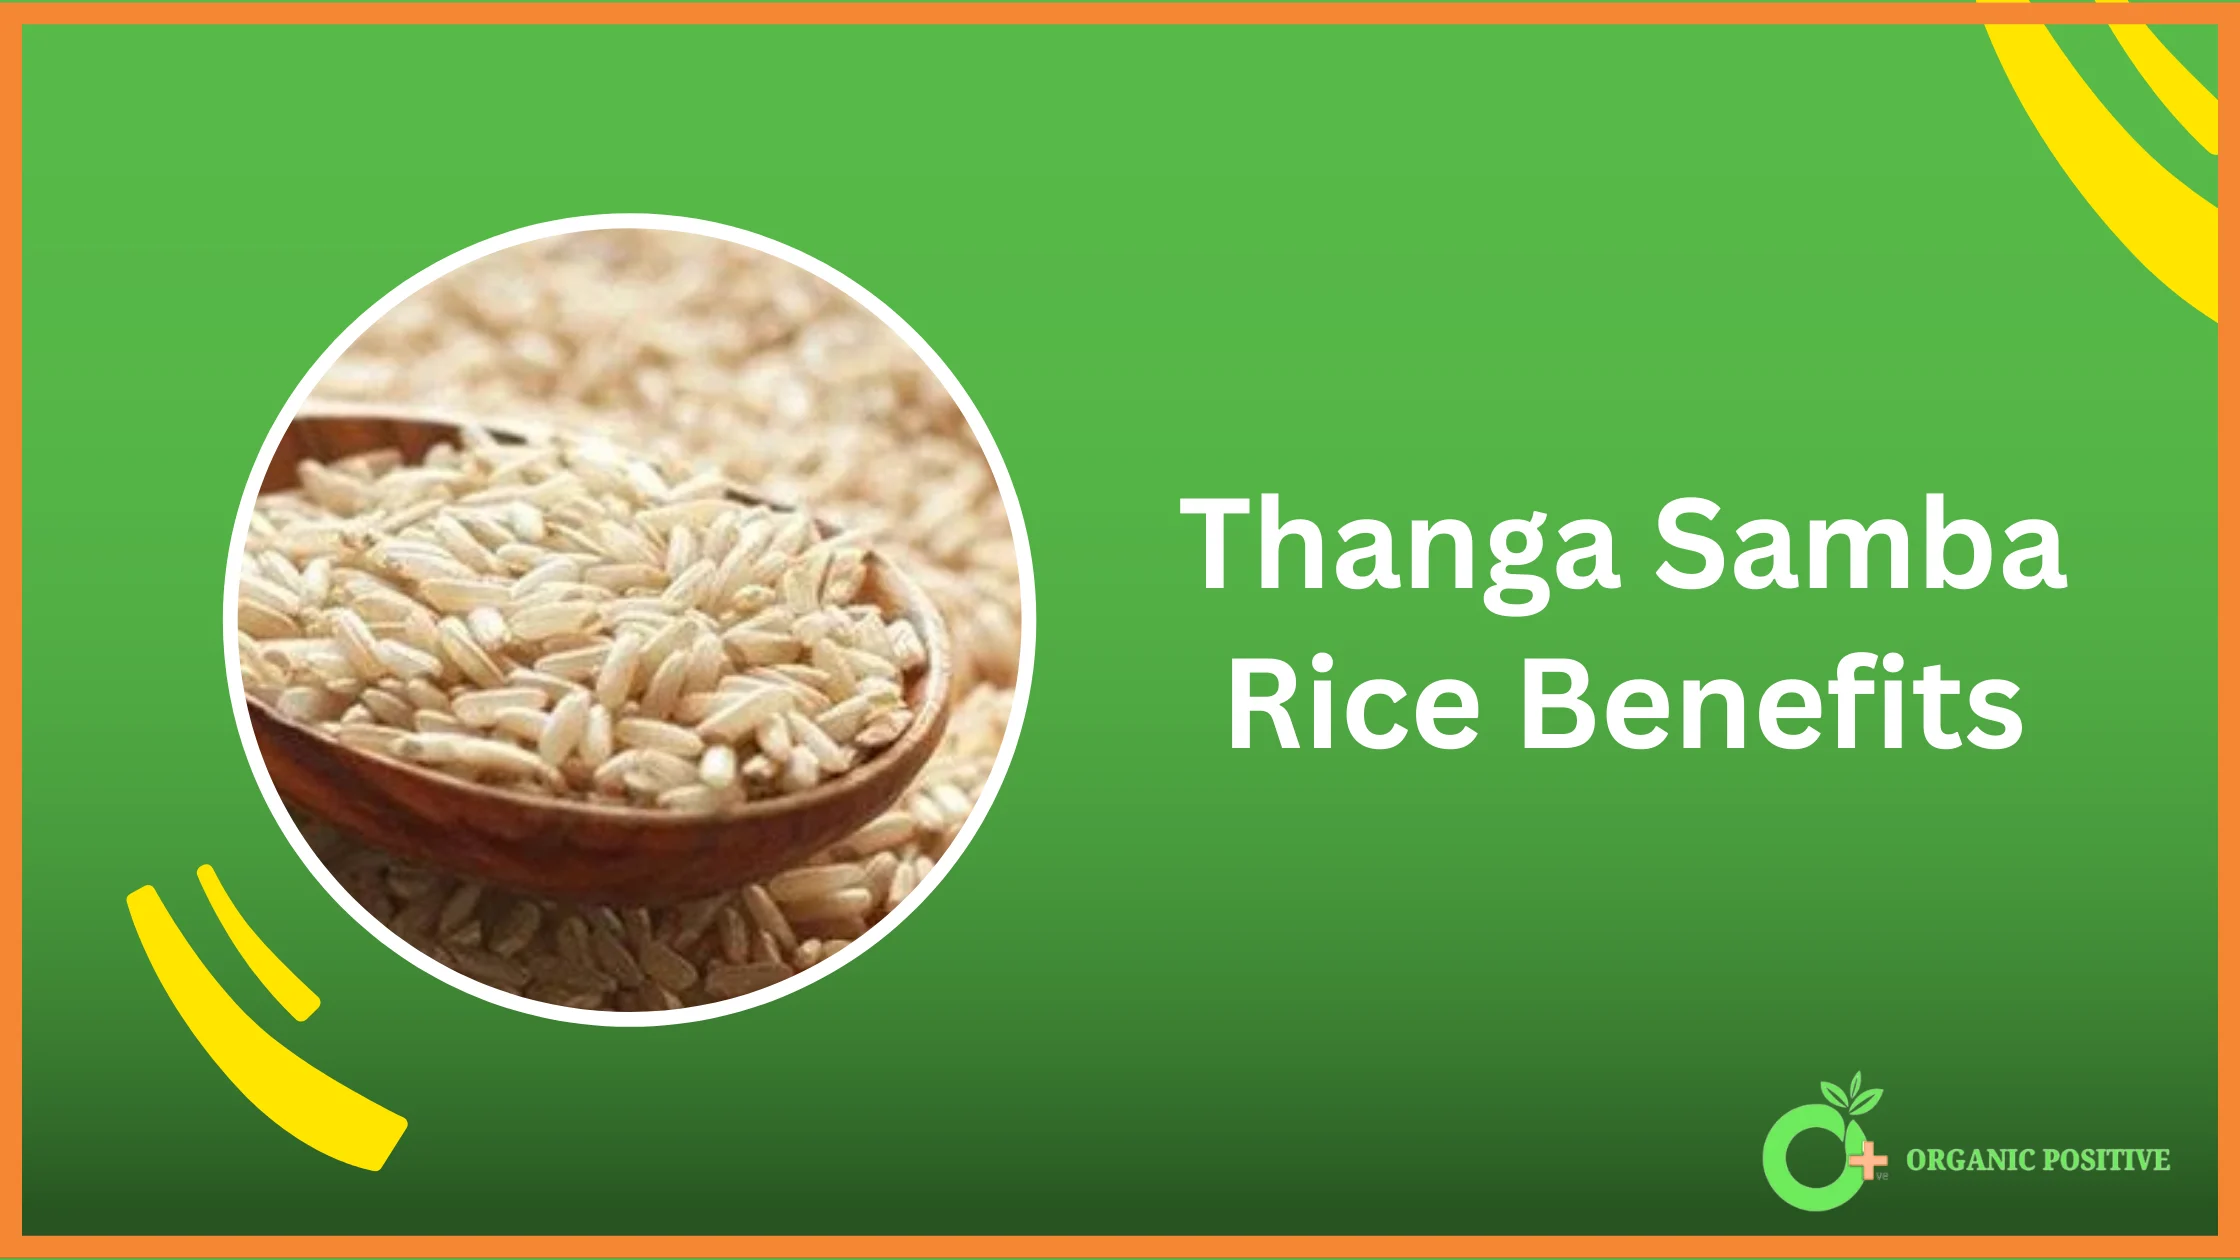 Thanga samba rice benefits